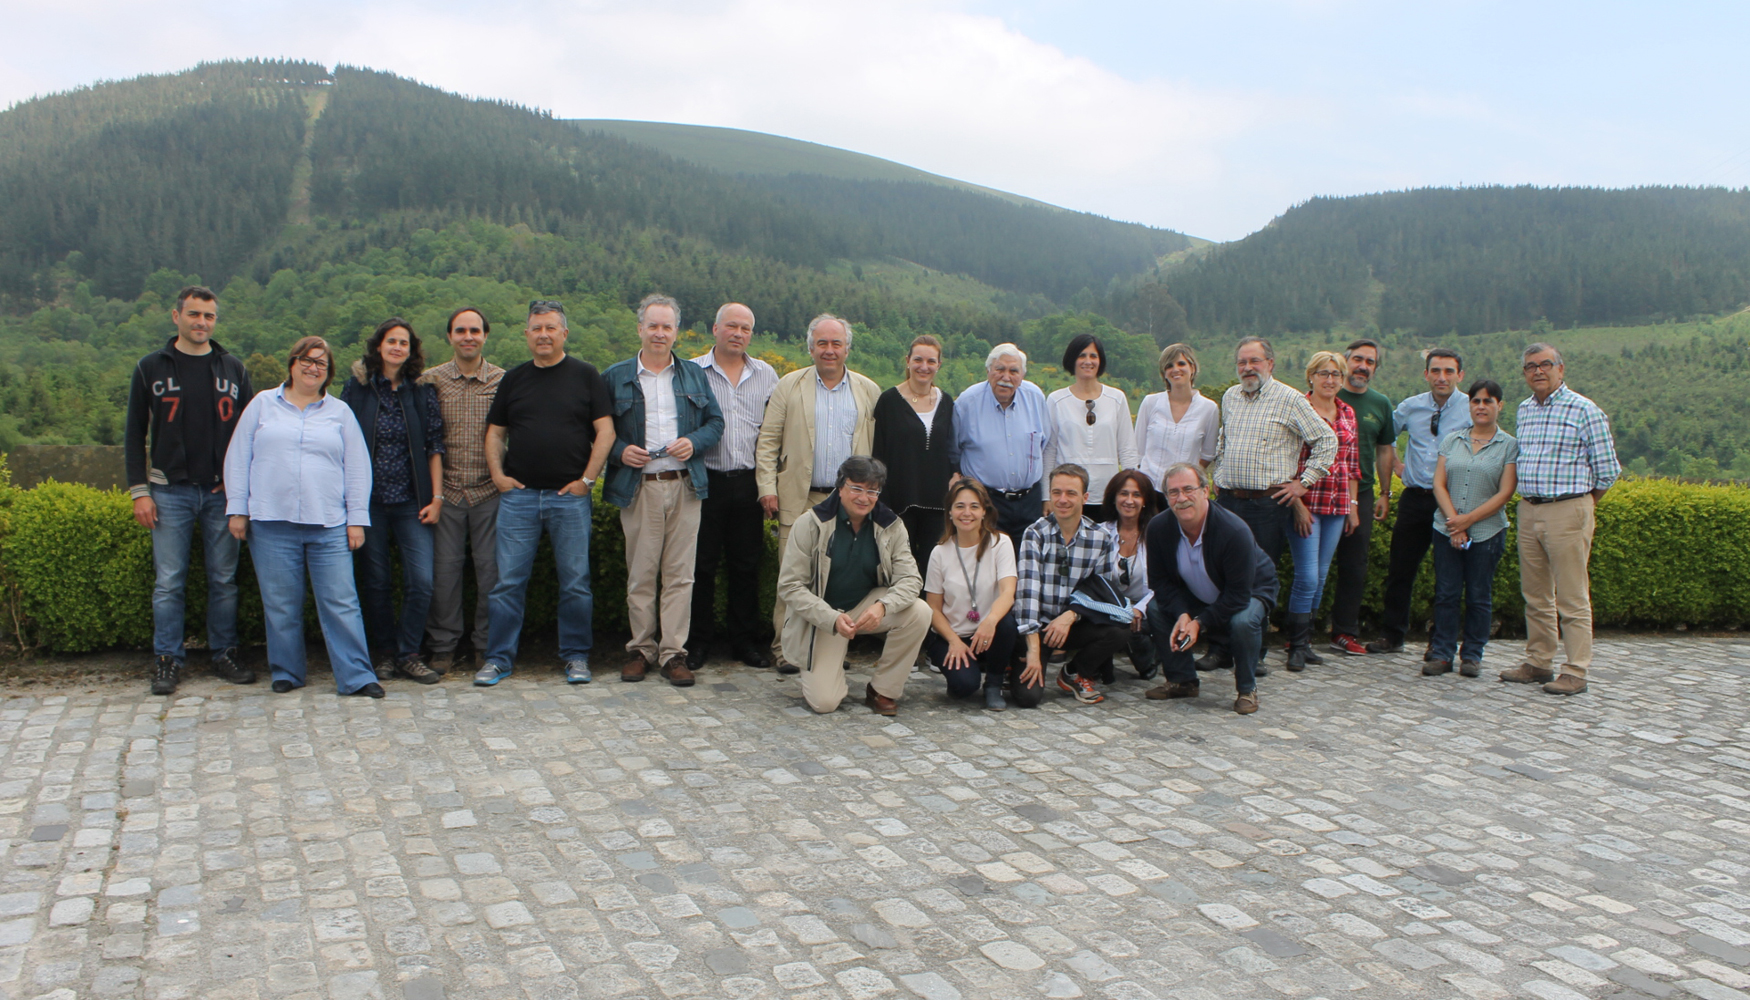 Junto a otras personalidades del sector, en este evento se han reunido los presidentes de las Asociaciones de Propietarios Forestales de Galicia...